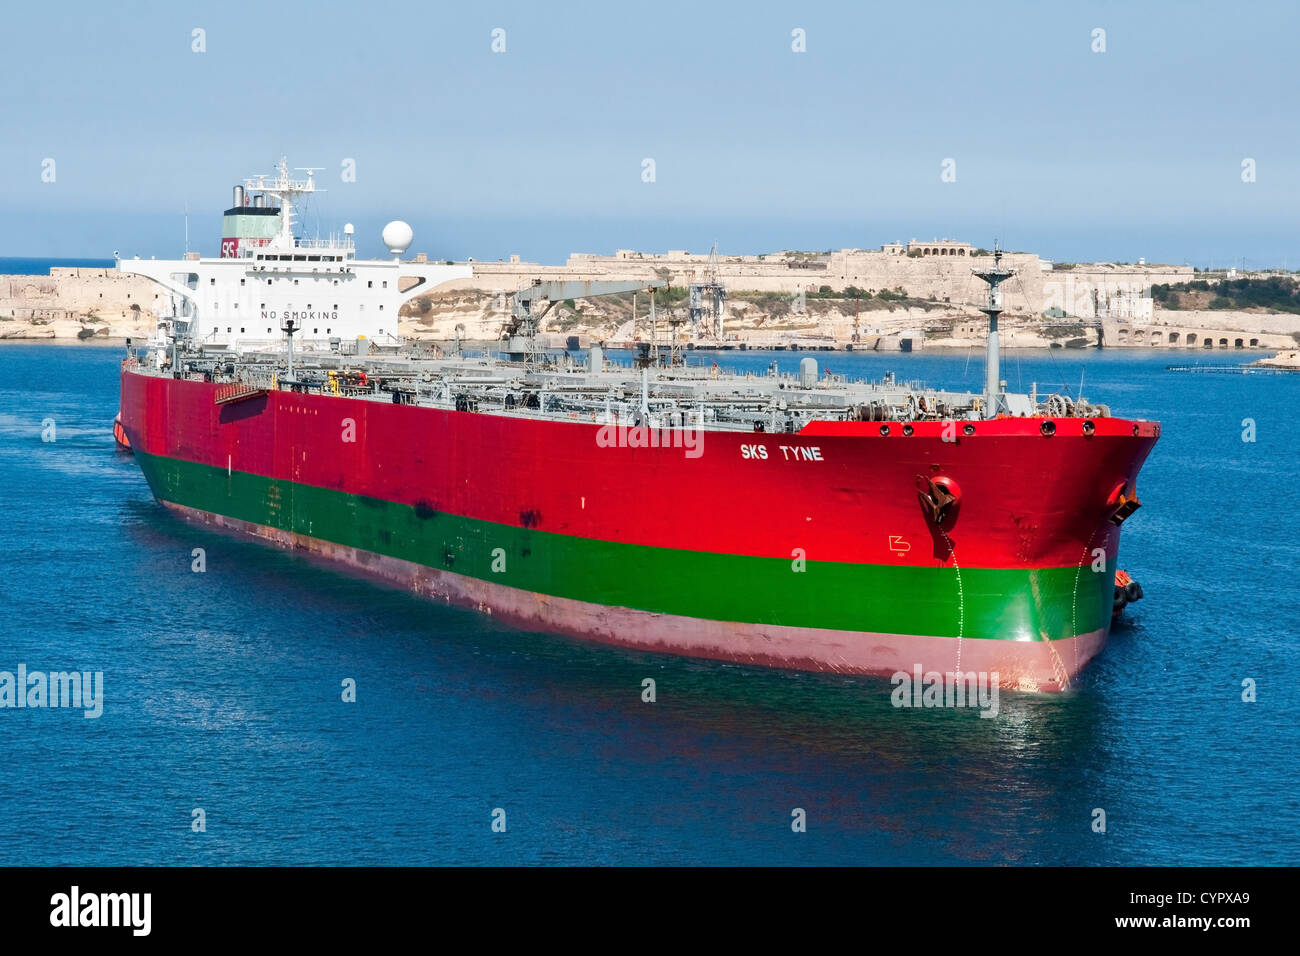 The supertanker 'SK Tyne' entering Grand Harbour, Malta. Stock Photo